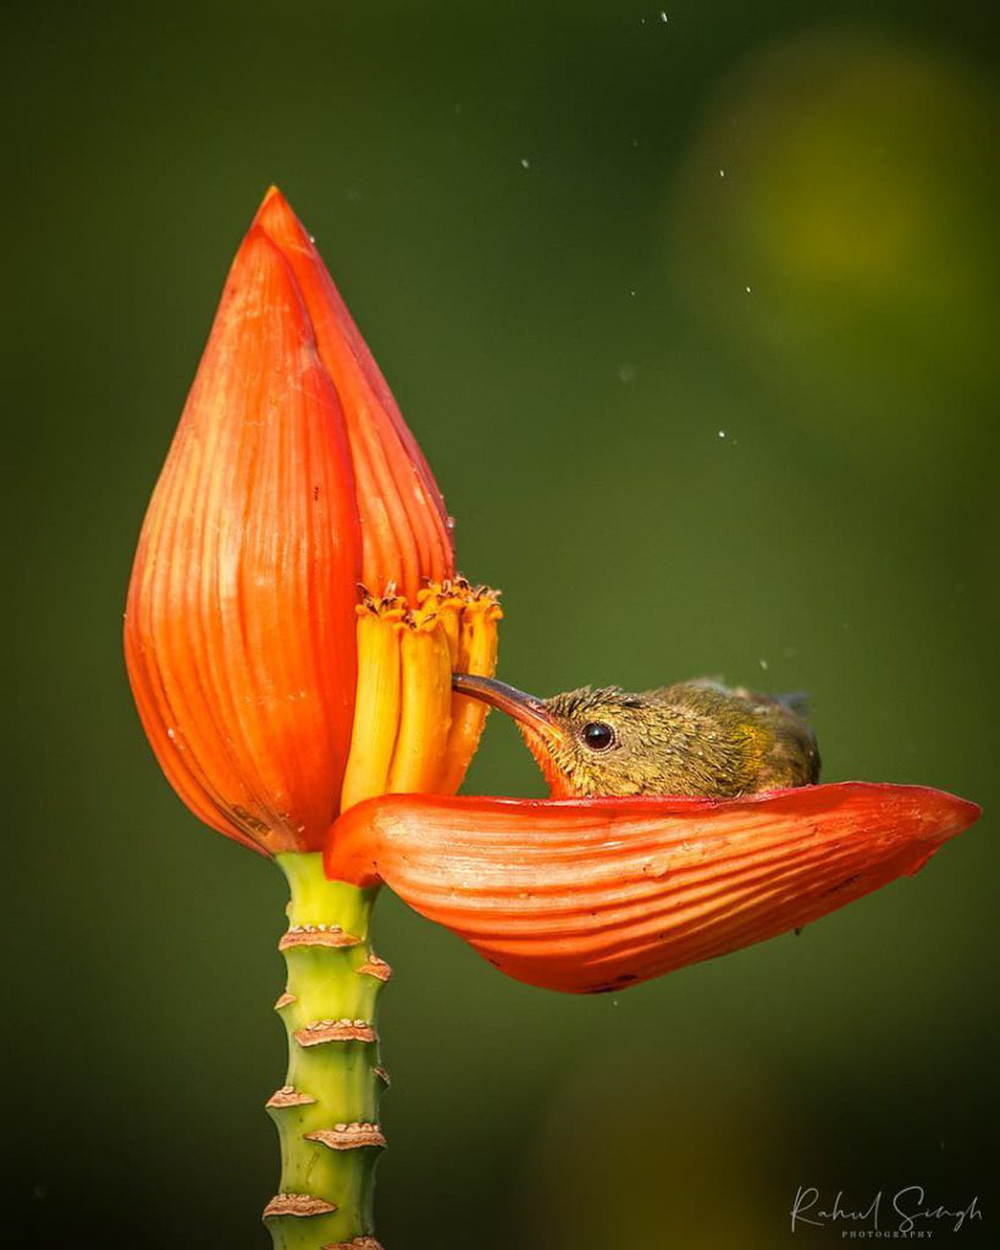 Chim hút mật no nê rồi ngả lưng ngủ trên cánh hoa, khoảnh khắc chỉ có một lần trong đời - Ảnh 5.